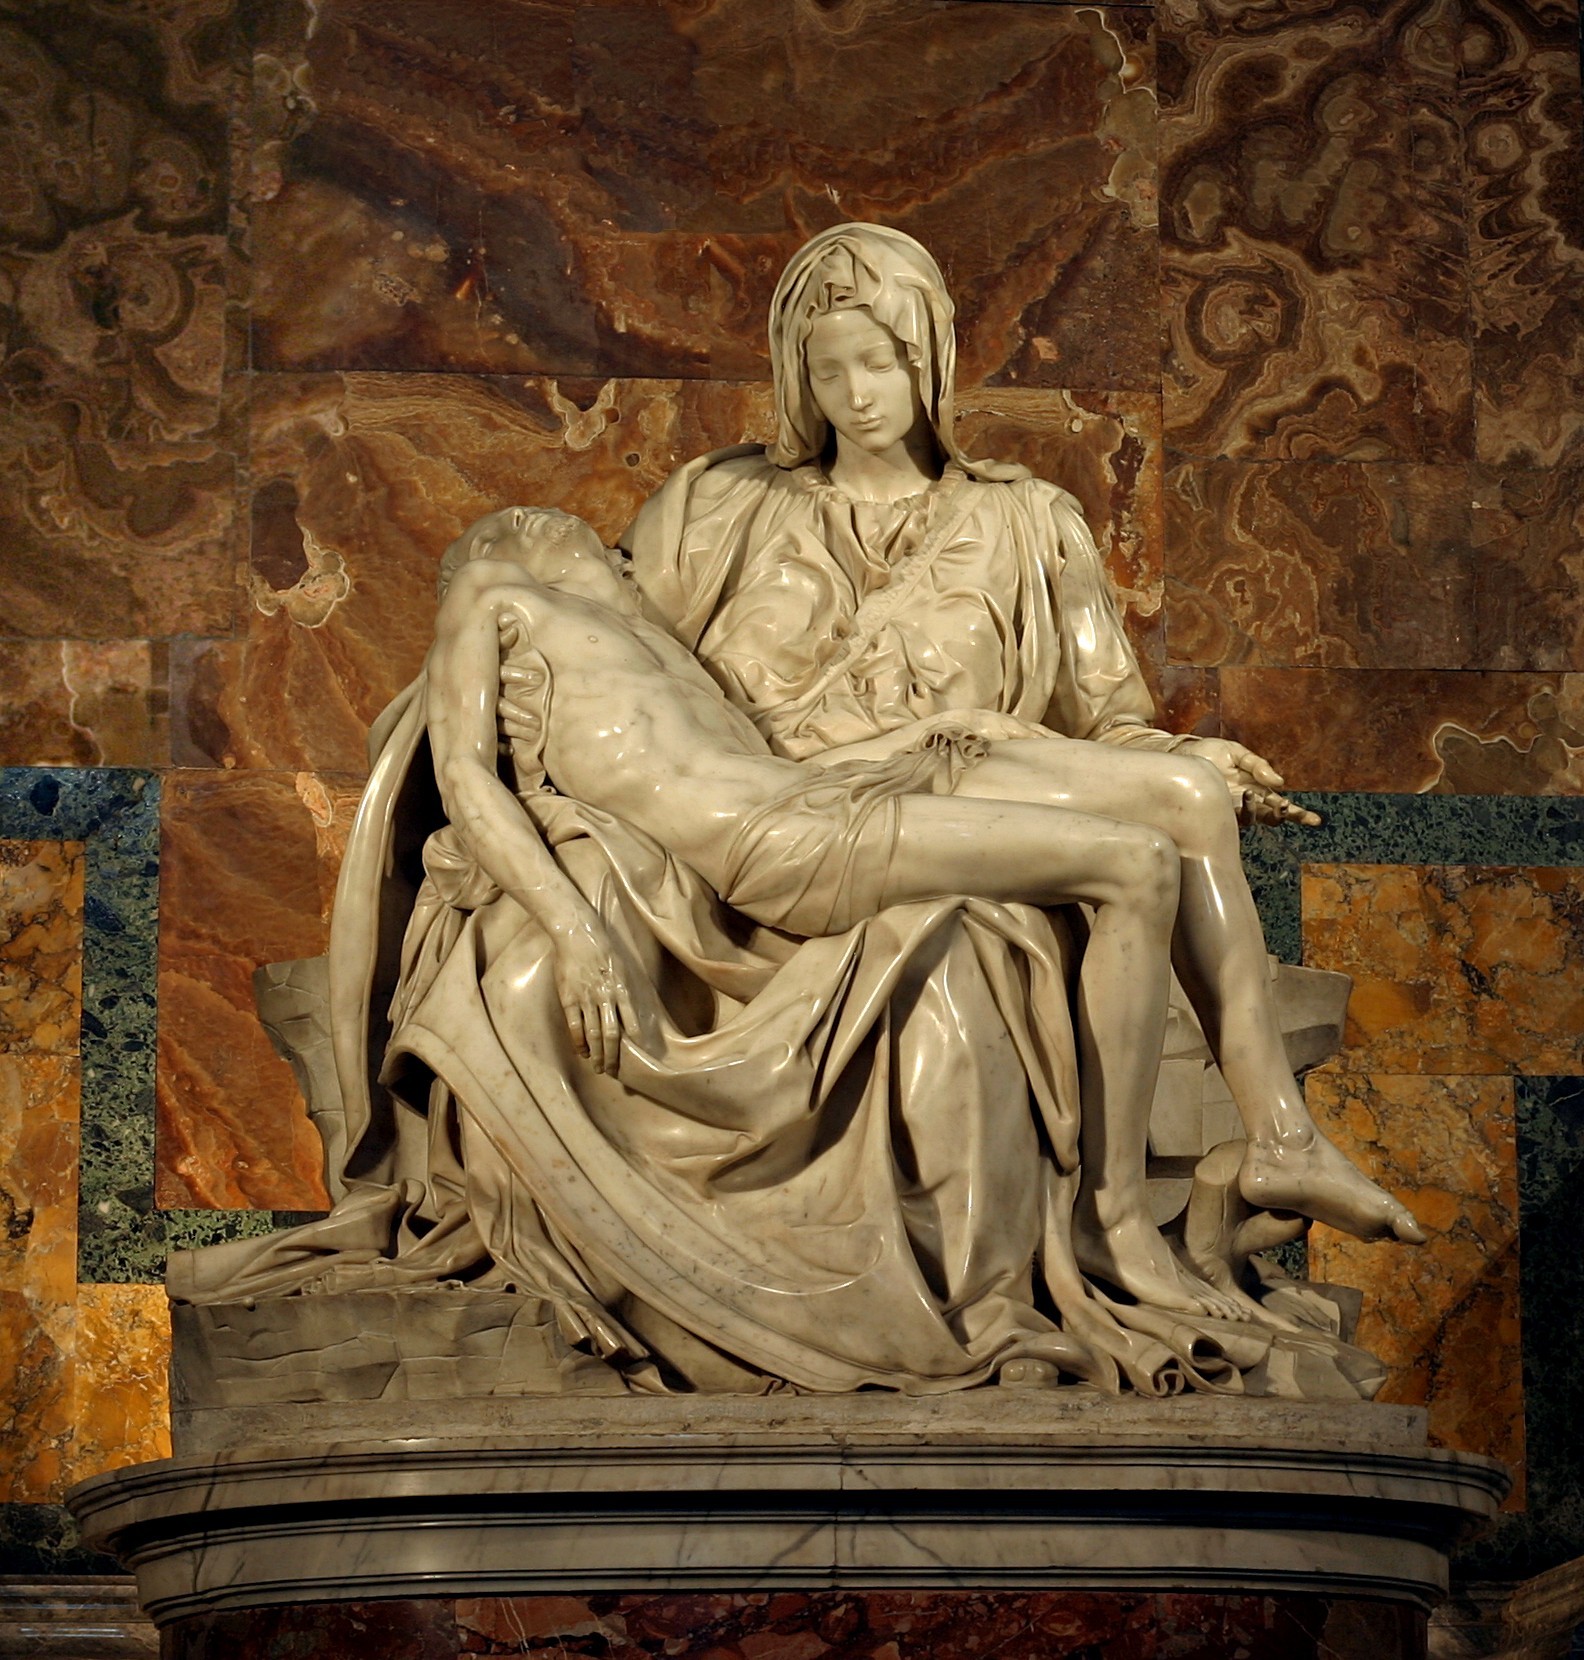 بييتا by  Michelangelo - 1498-99 م - 1,74 م x 1,95 م  